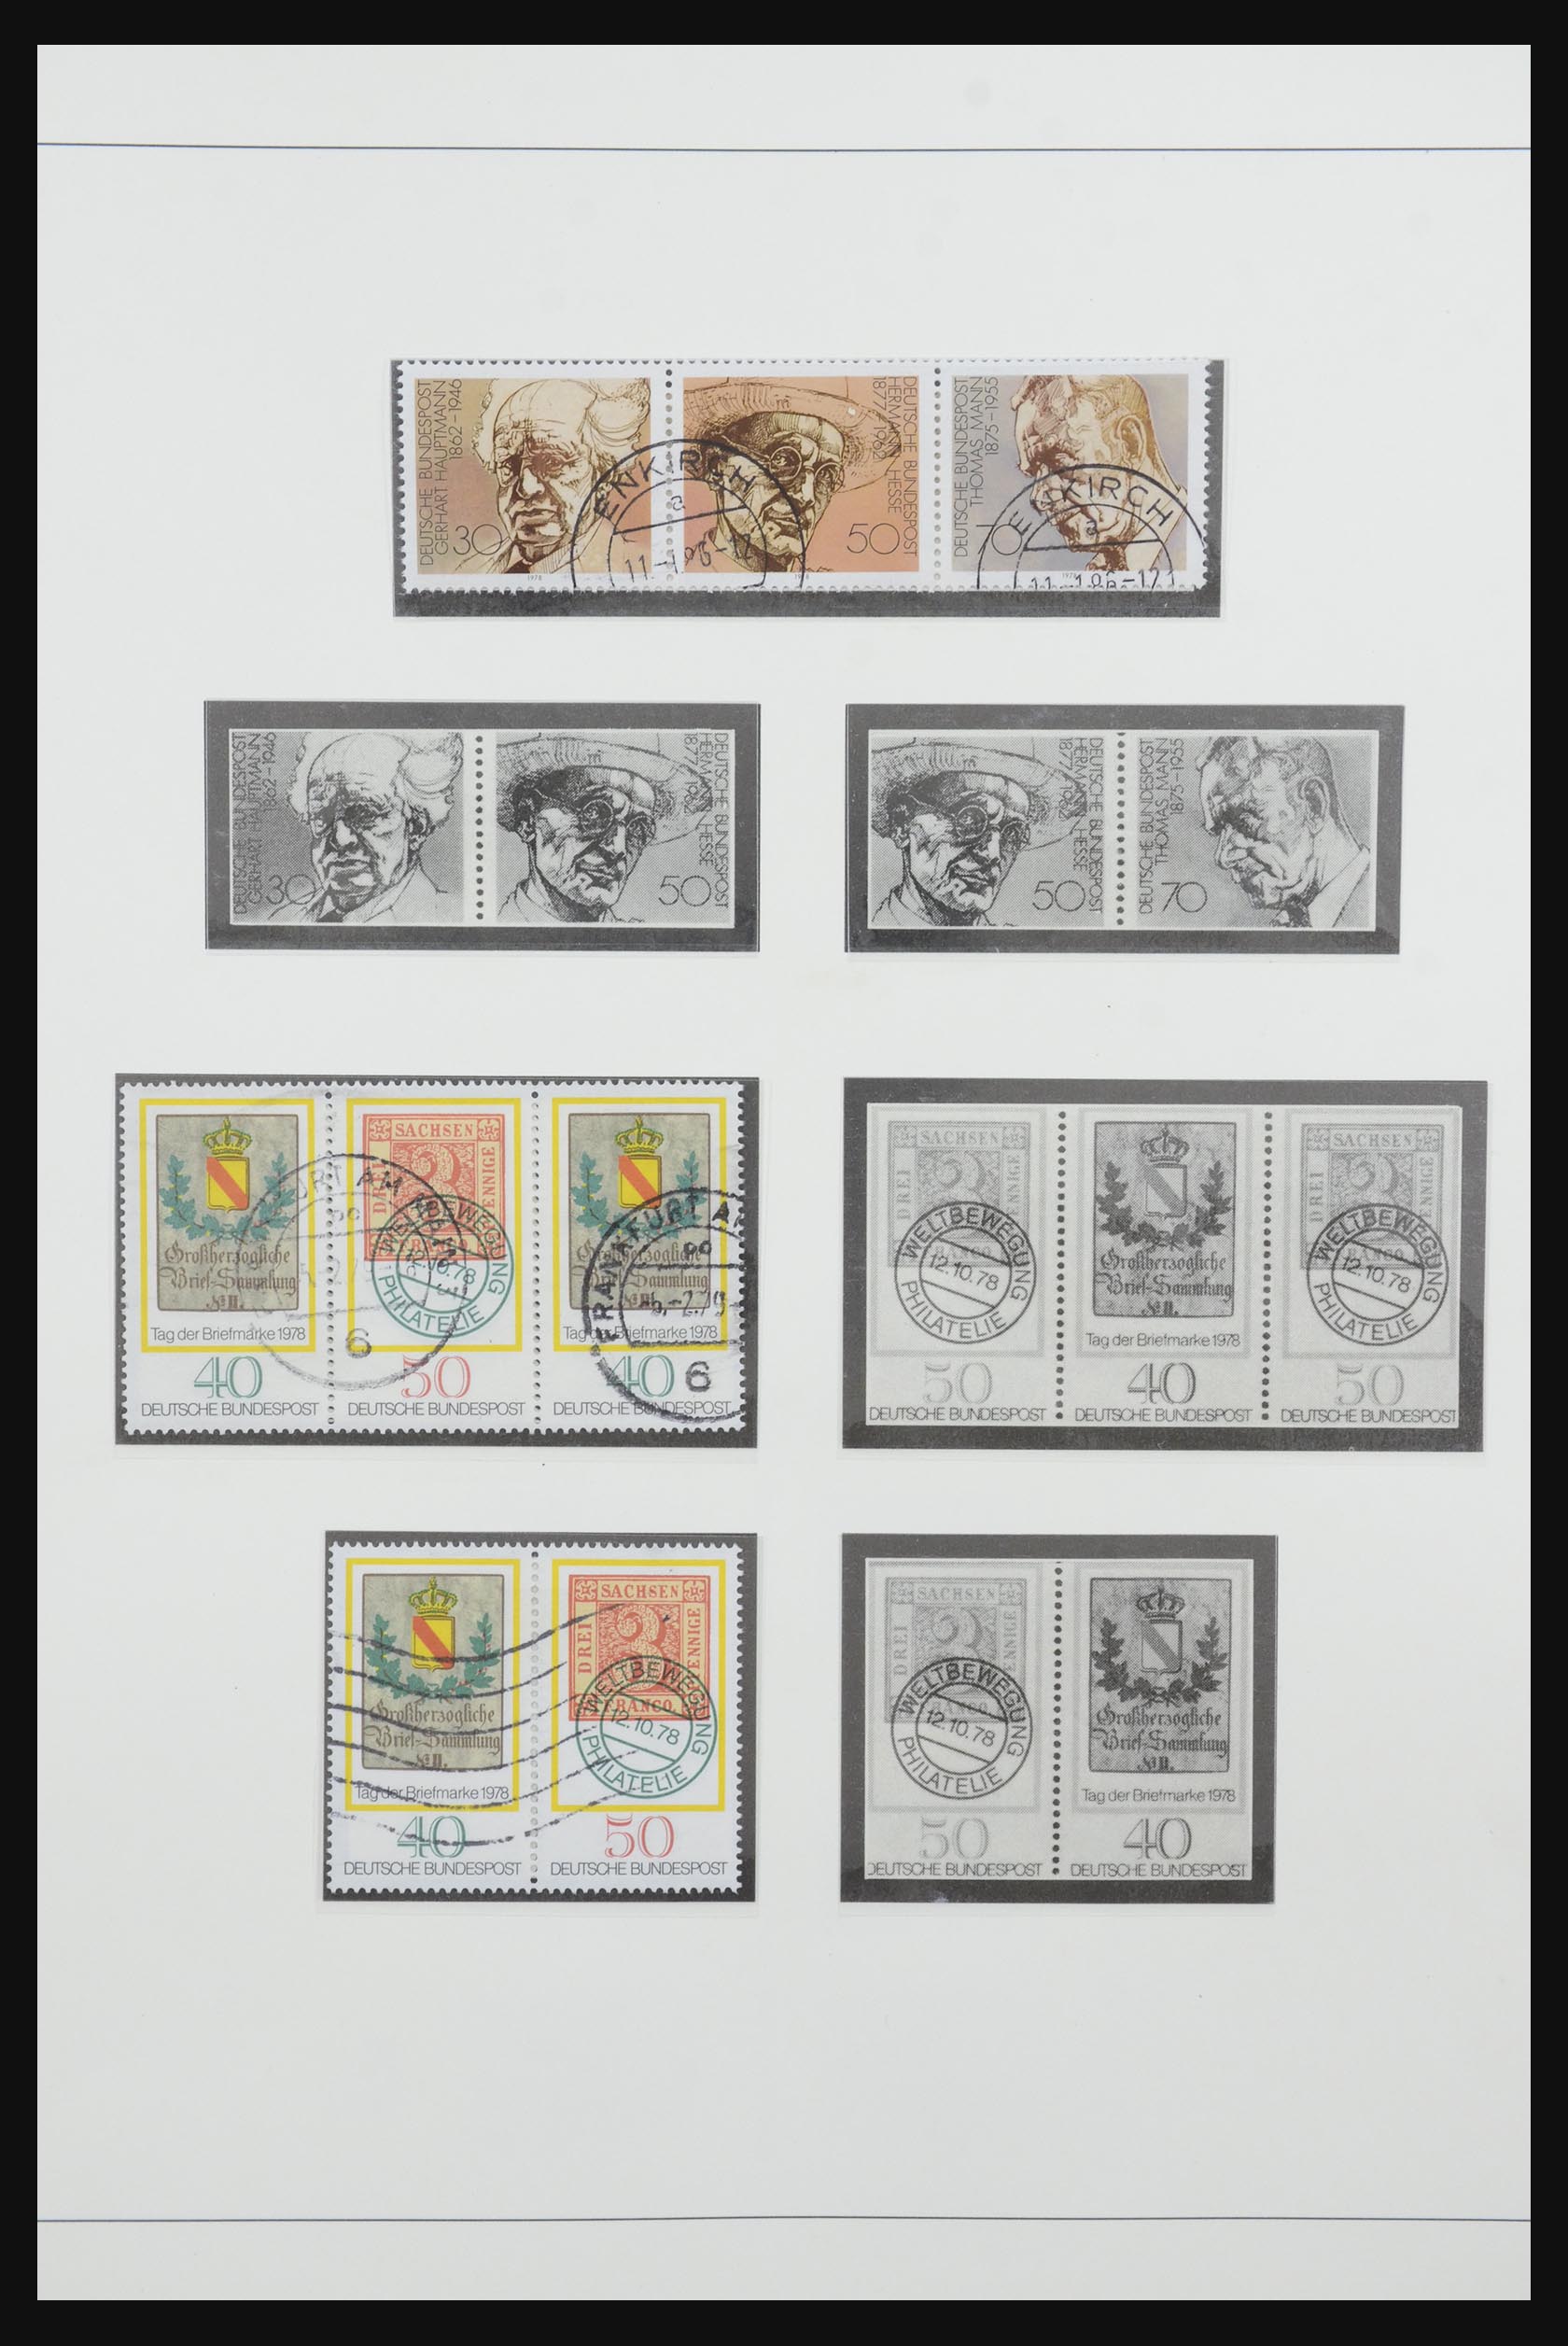 31842 059 - 31842 Bundespost combinaties 1951-2003.